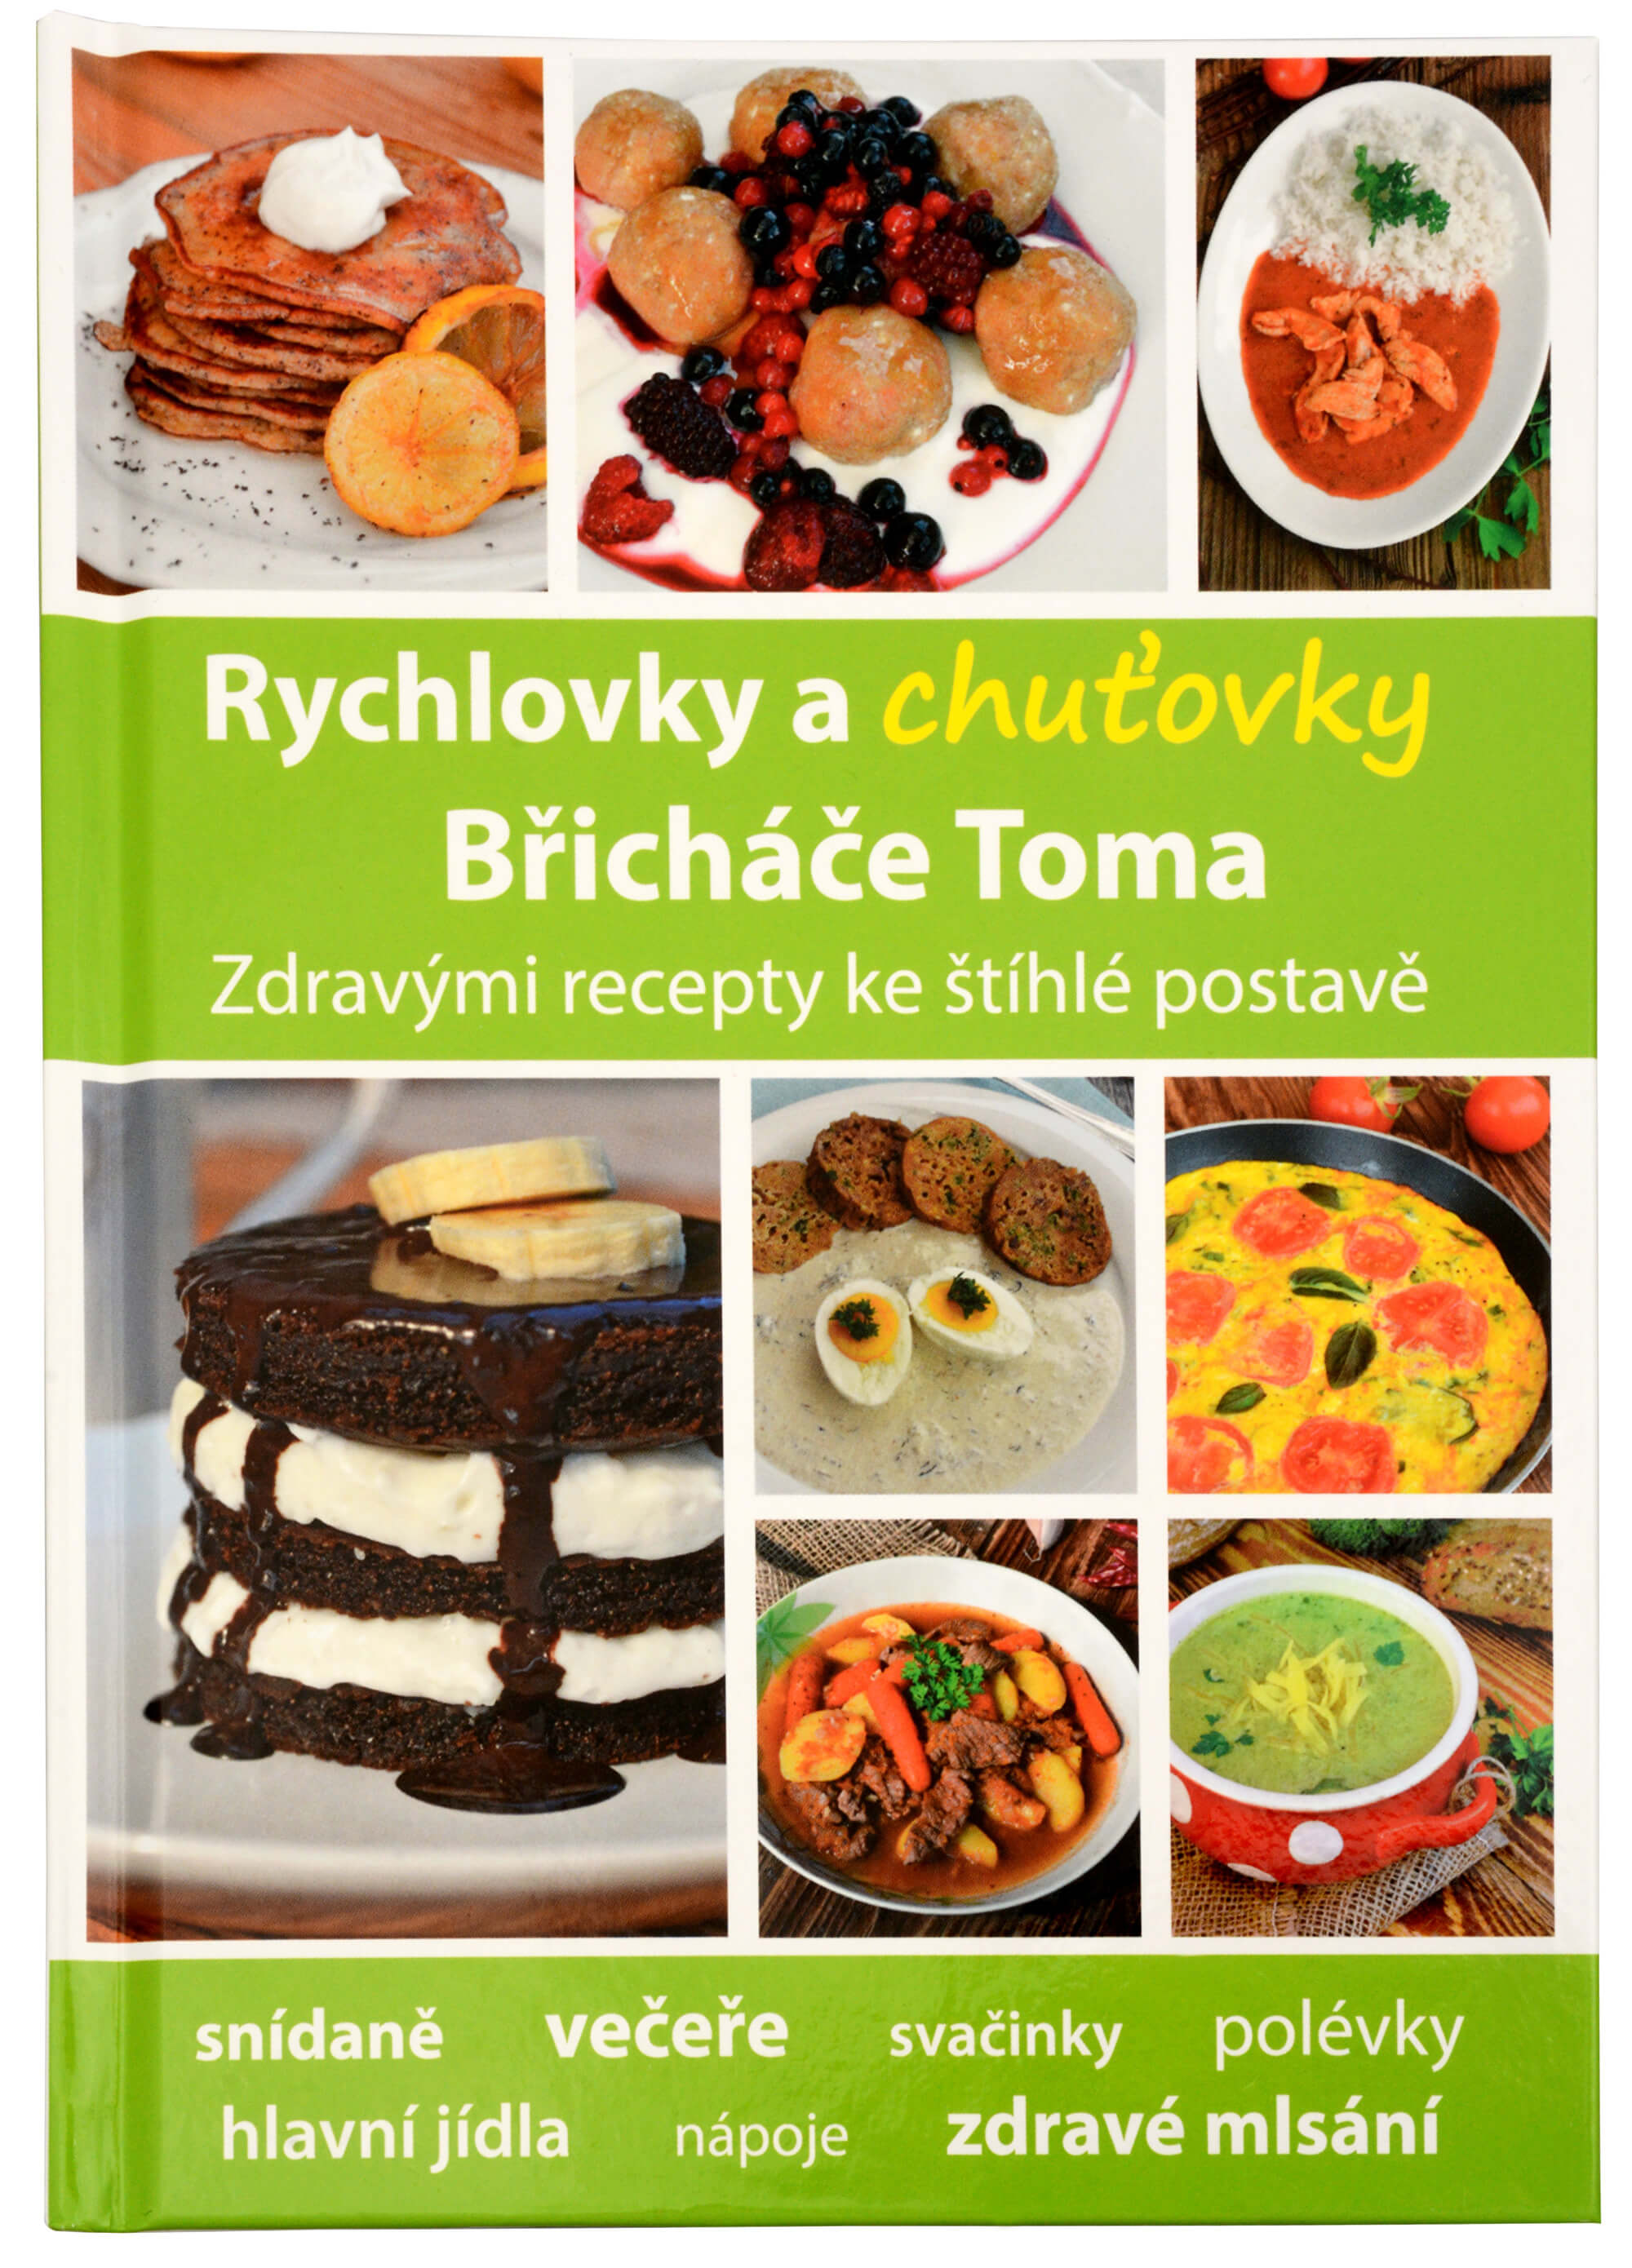 Zobrazit detail výrobku Knihy Rychlovky a chuťovky Břicháče Toma (Mgr. Tomáš Kosačík) + 2 měsíce na vrácení zboží